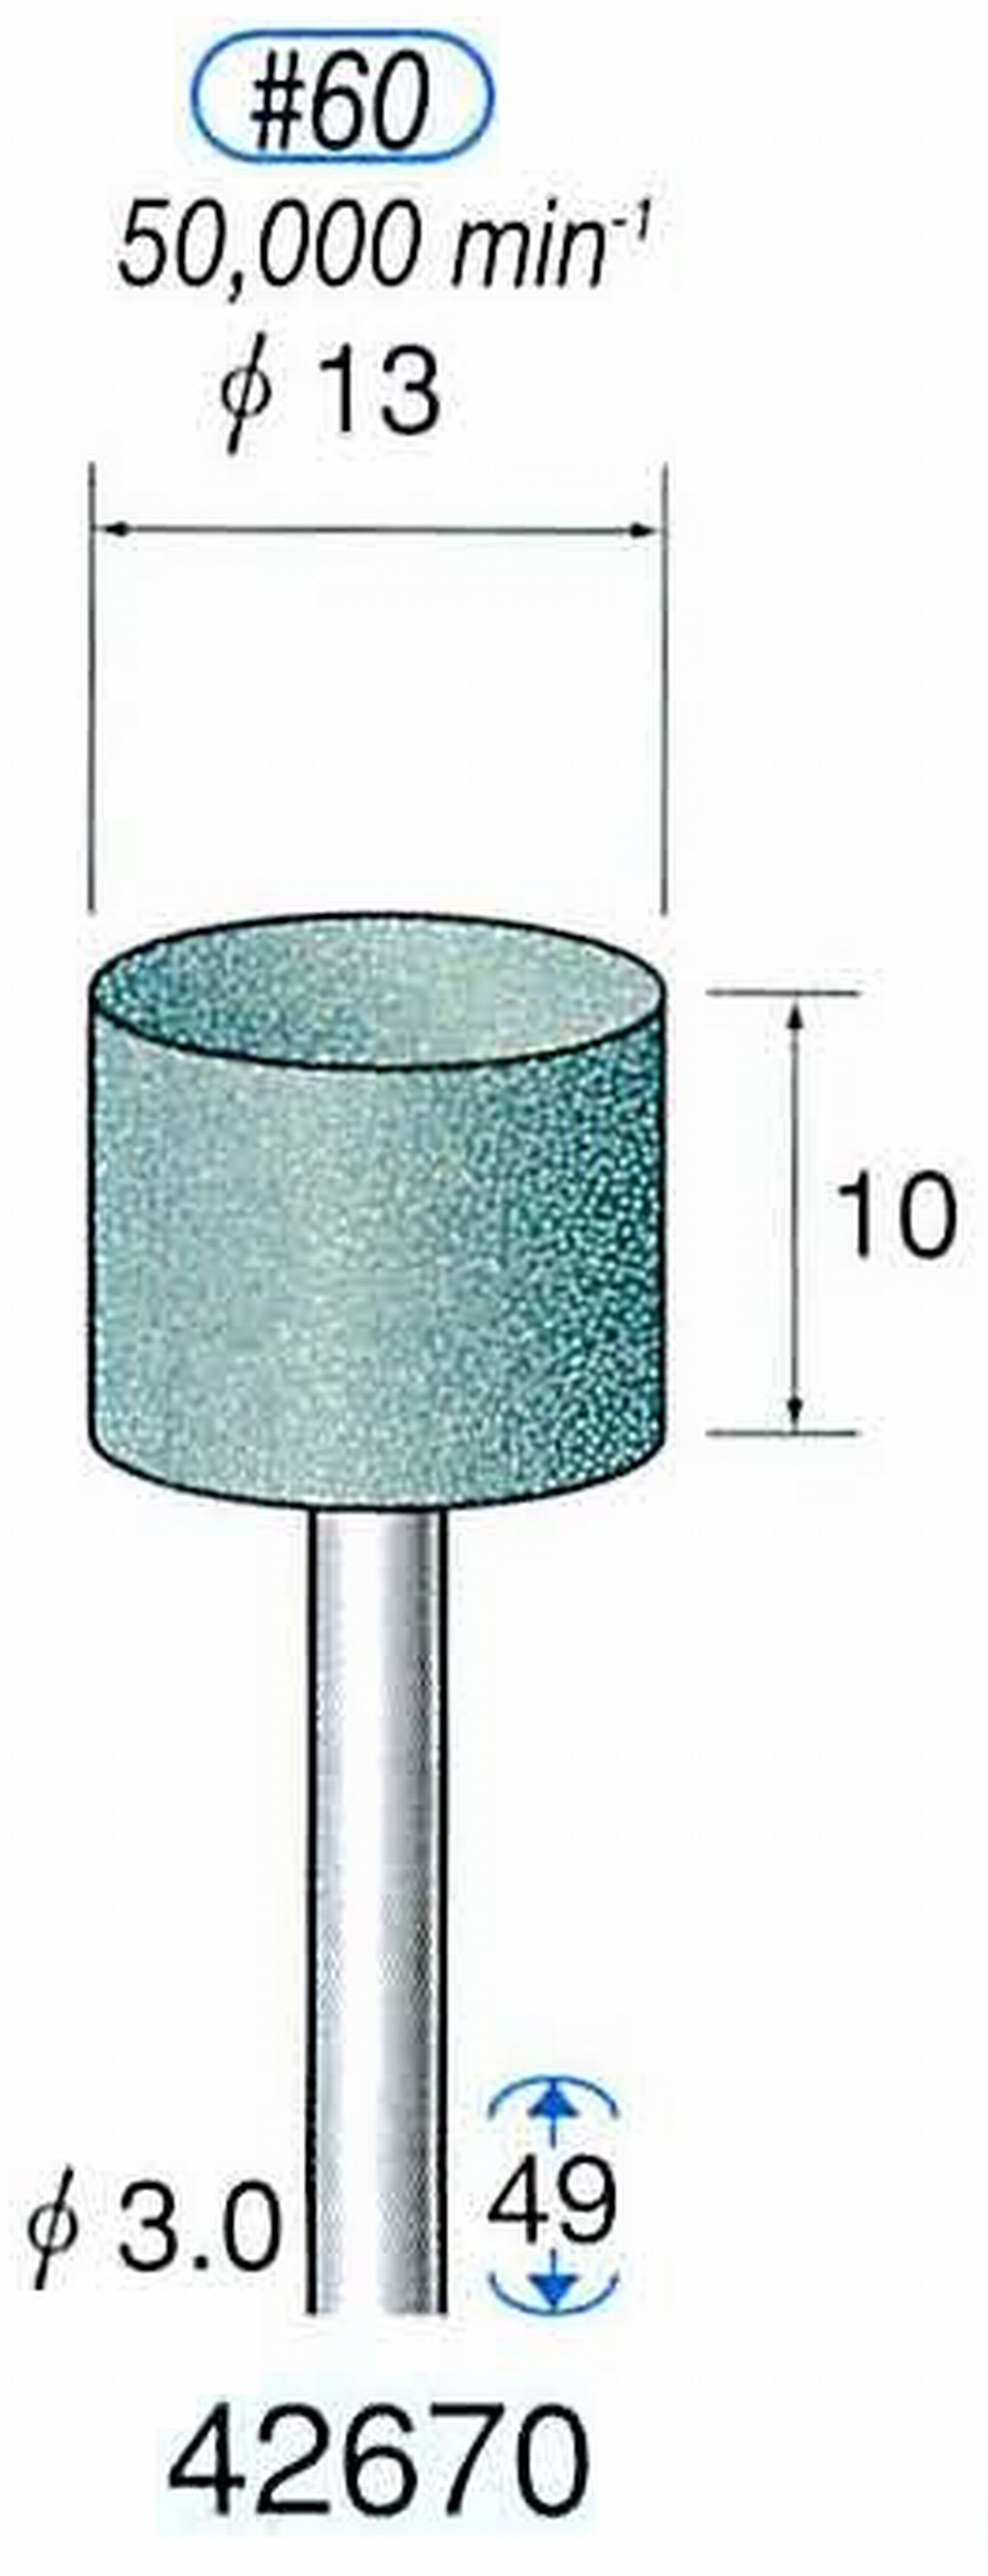 ナカニシ/NAKANISHI 軸付砥石(GC砥粒) グリーン砥石 軸径(シャンク) φ3.0mm 42670